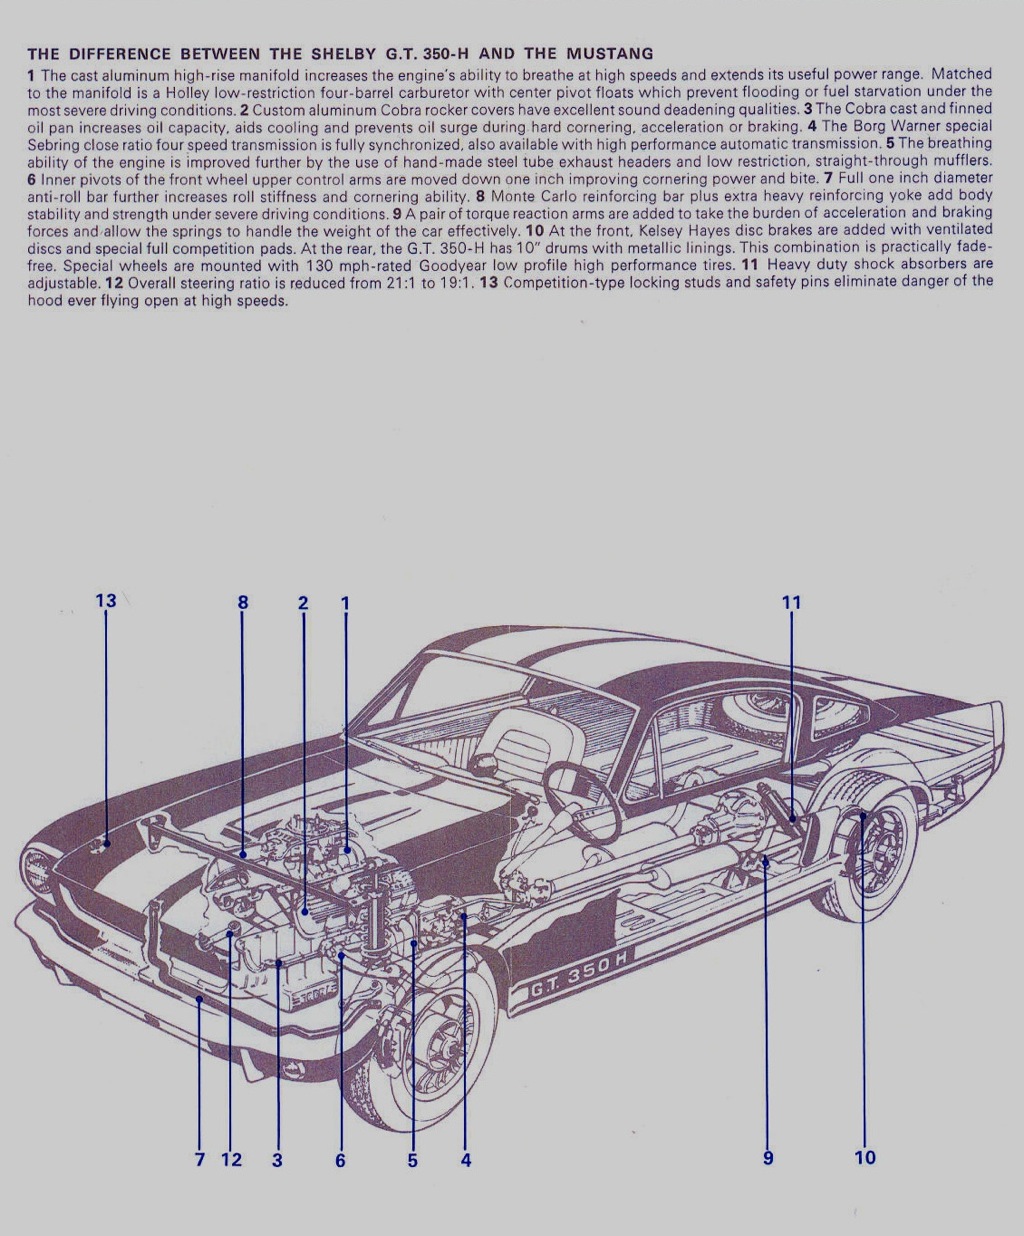 1966 Hertz Brochure Mustang Shelby GT350